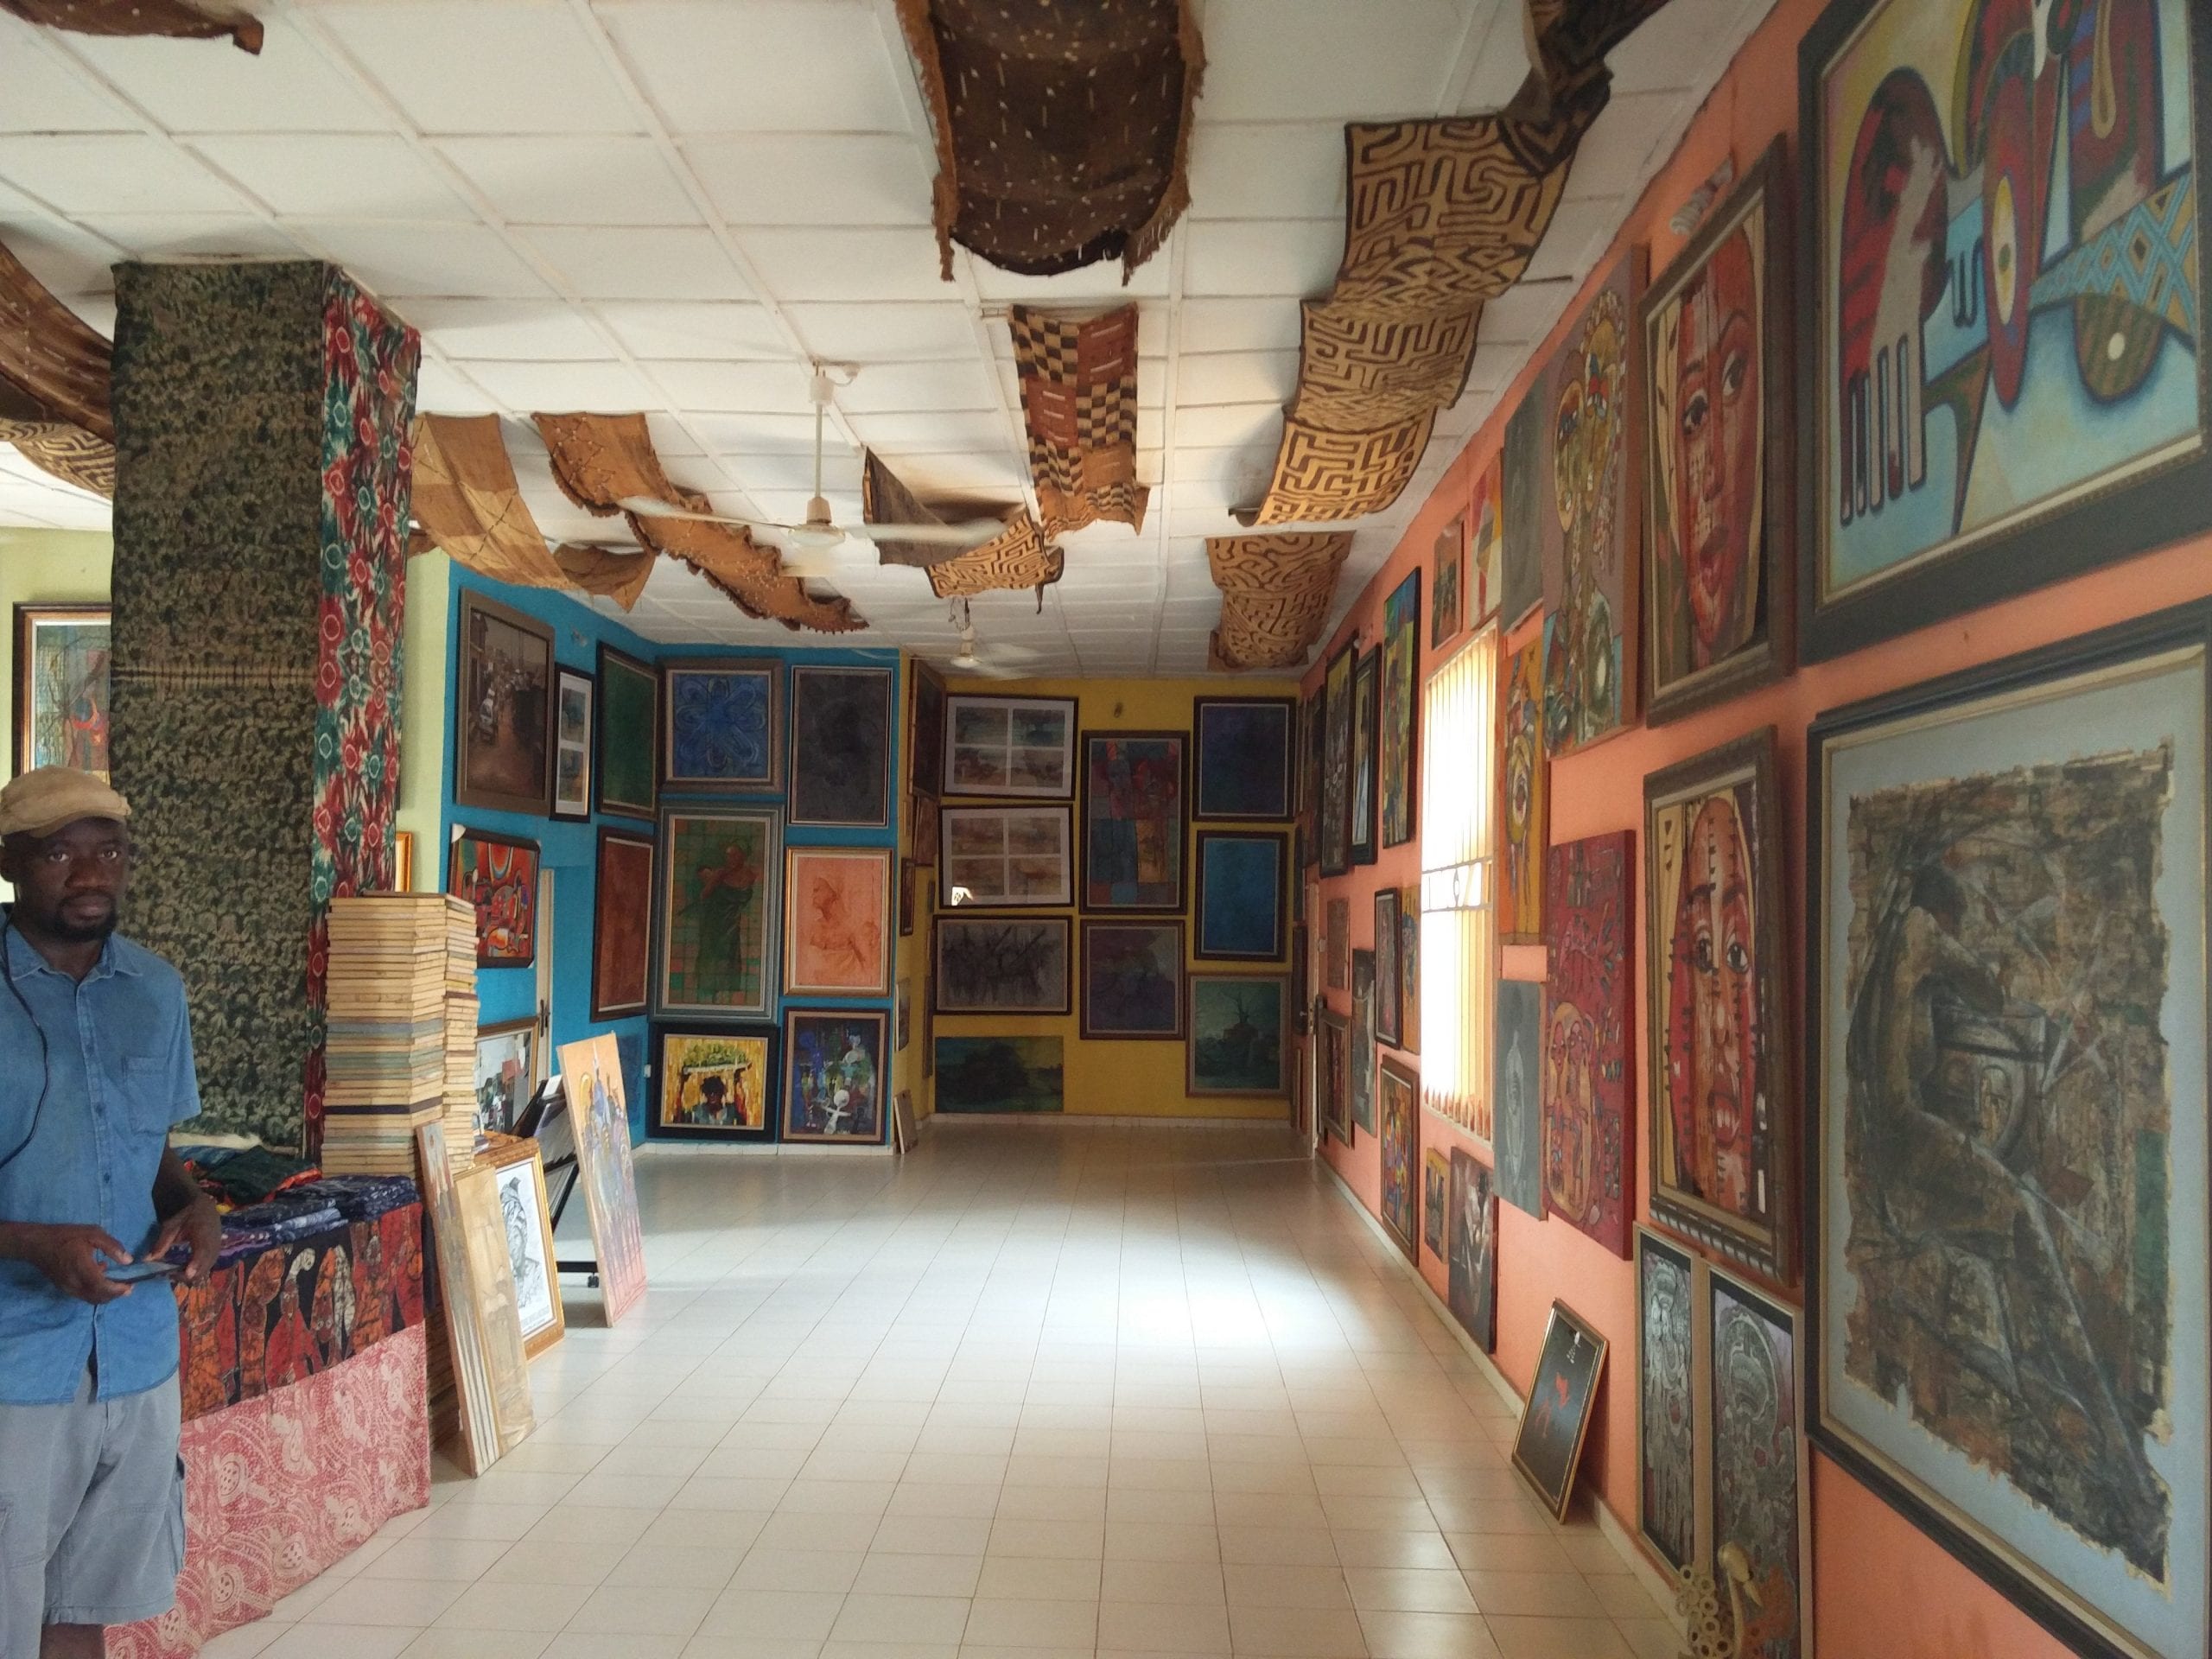 Top Art Galleries in Abuja - Nike Art Gallery and Workshop